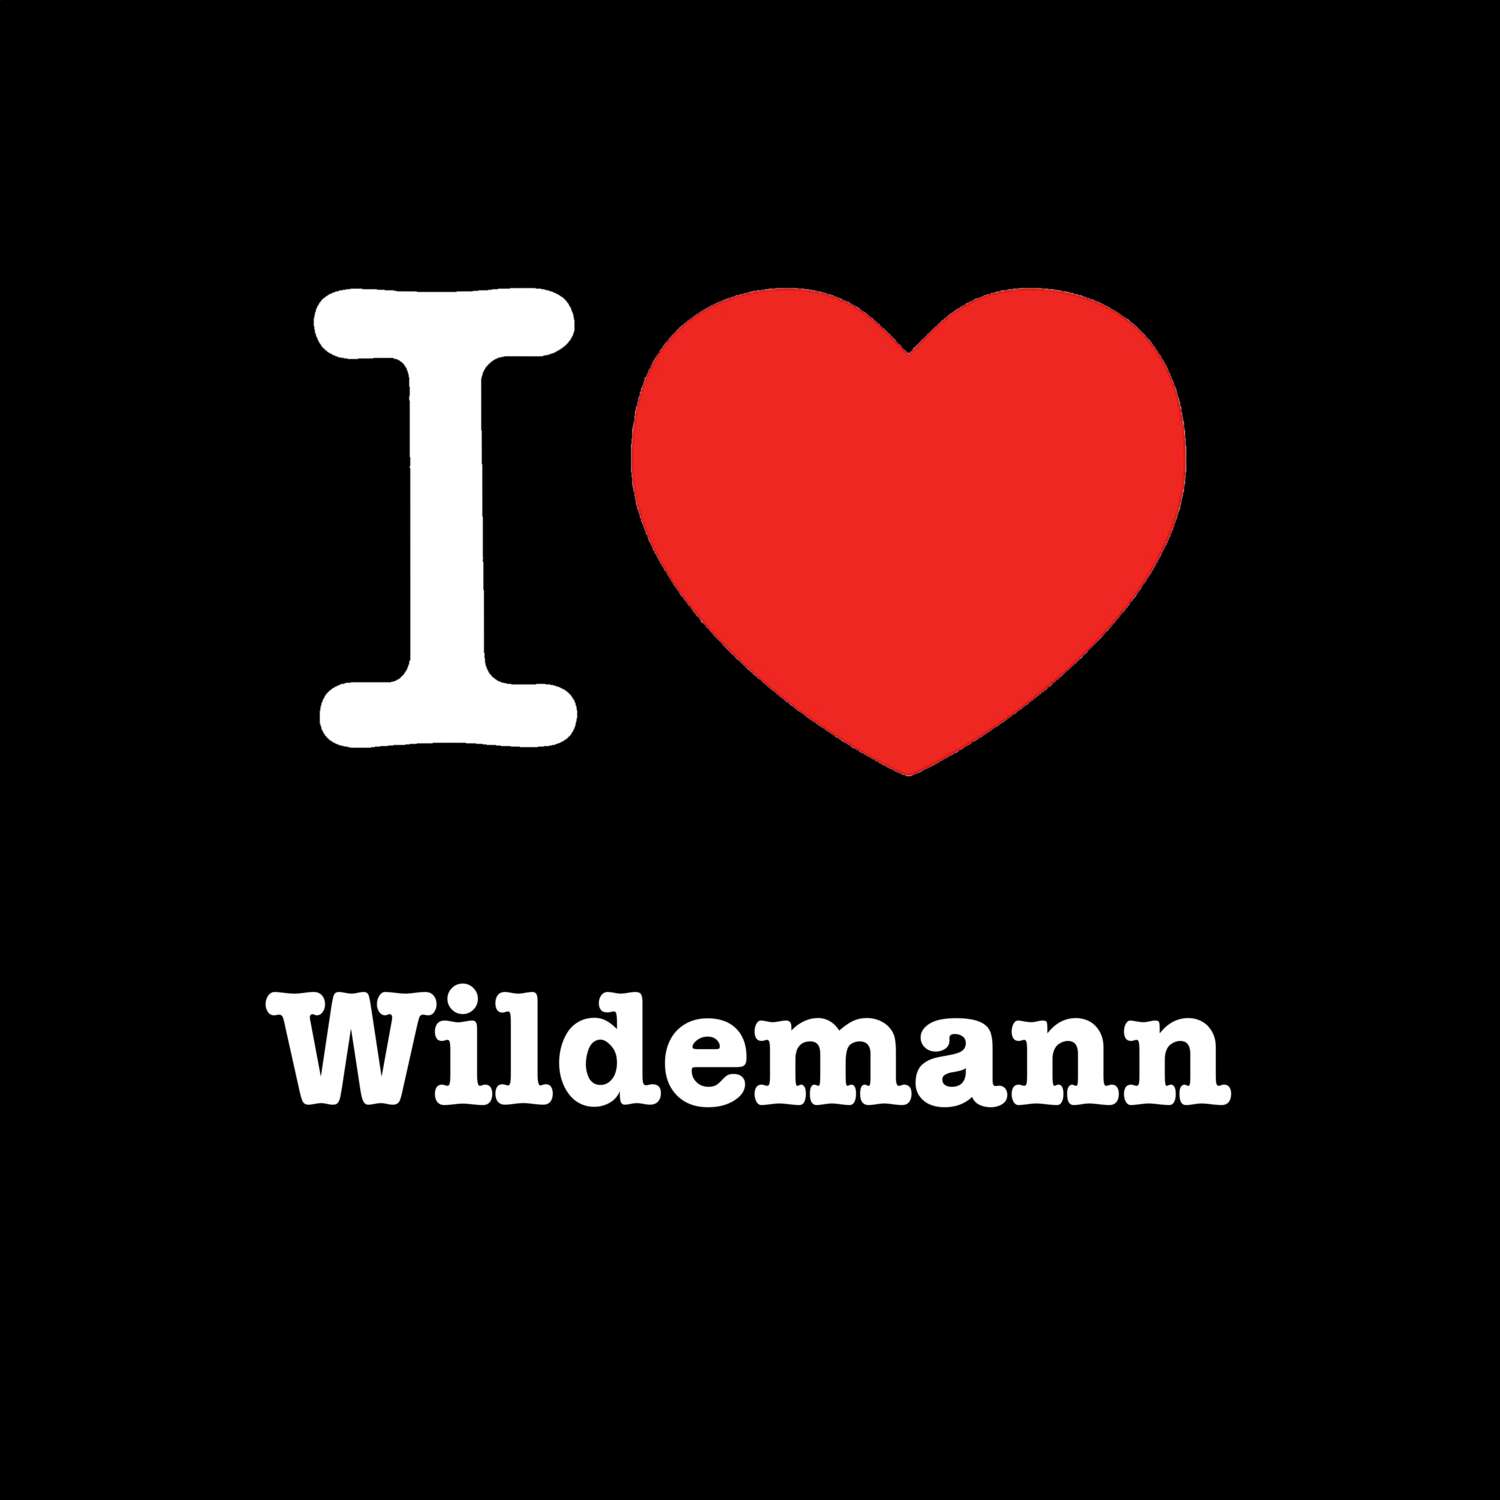 Wildemann T-Shirt »I love«